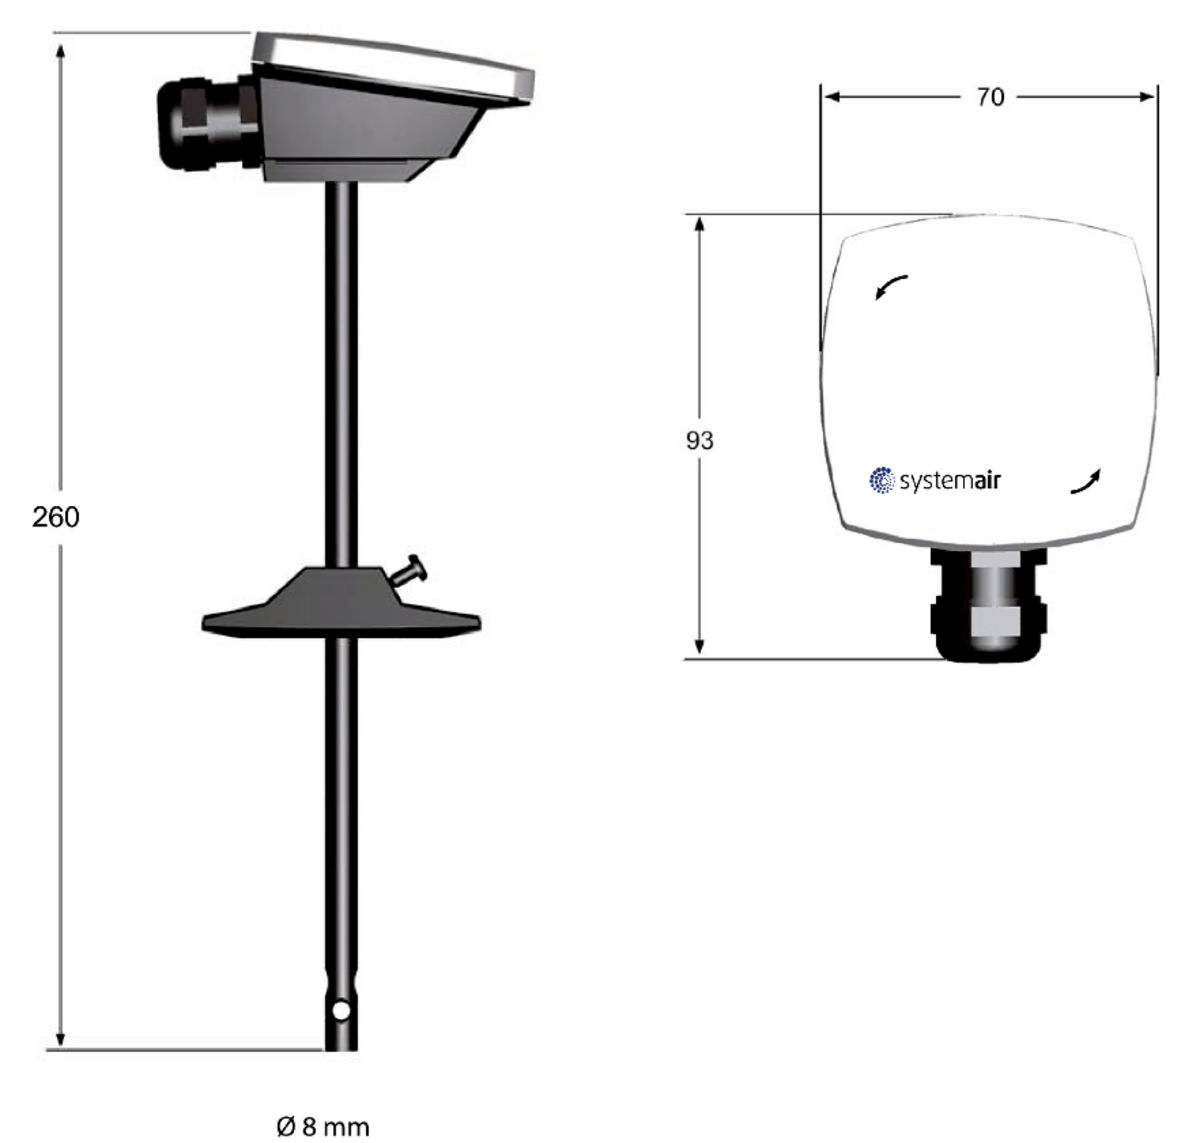 Images Dimensions - TG-KH/PT1000 Duct sensor - Systemair